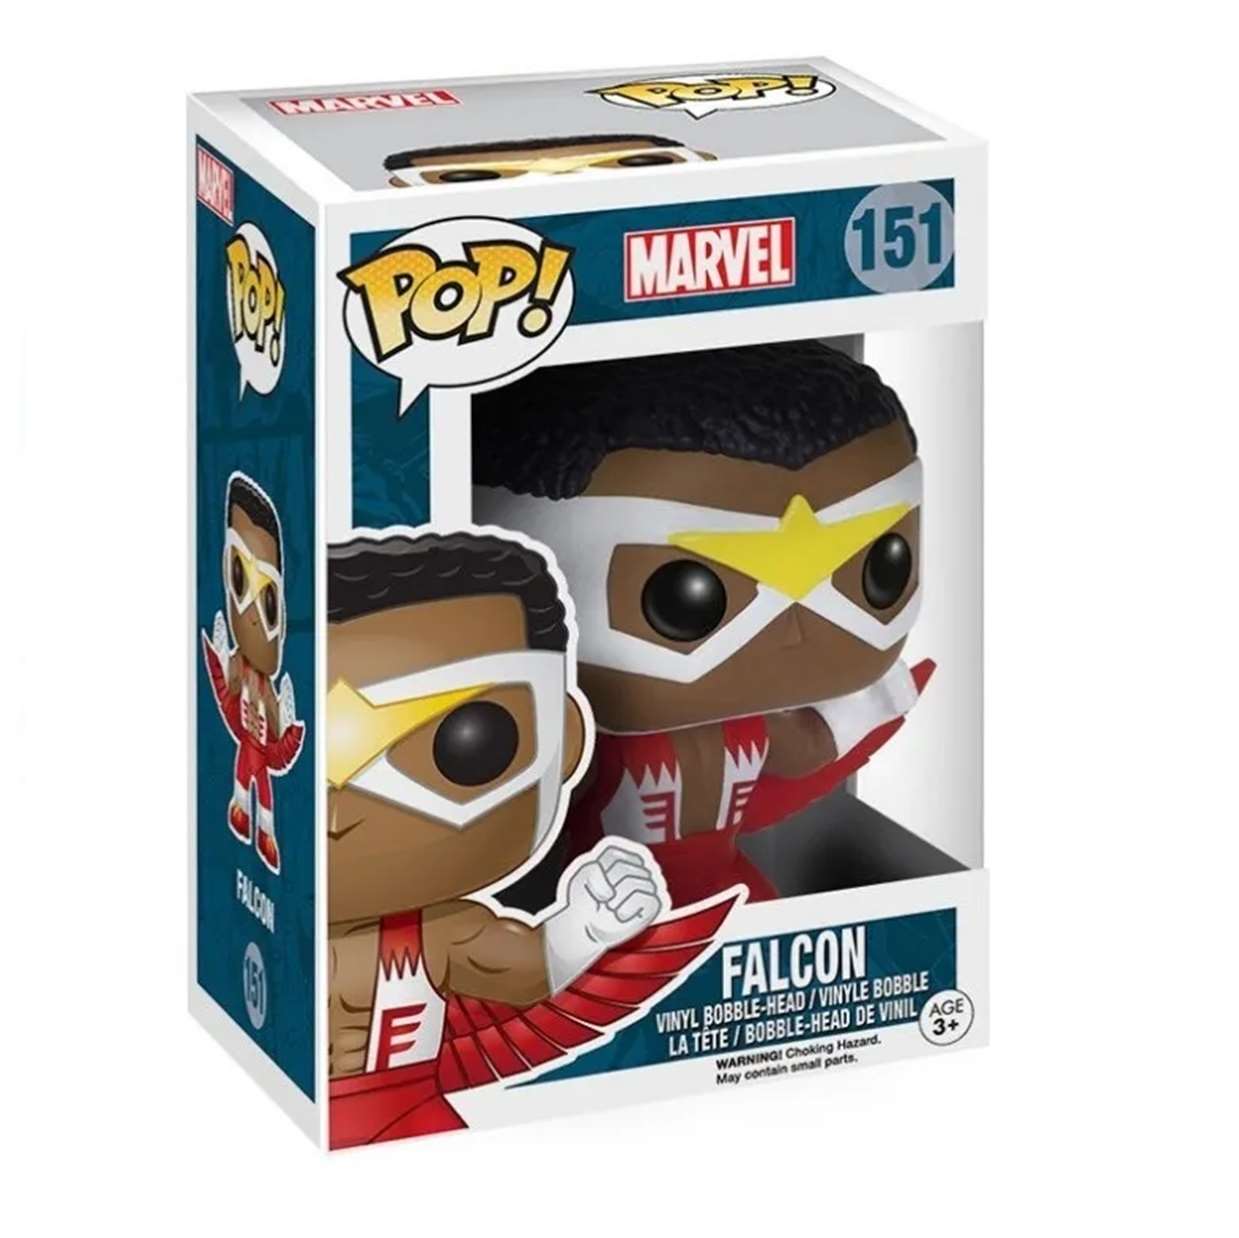 Falcon #151 Figura Marvel Funko Pop! 